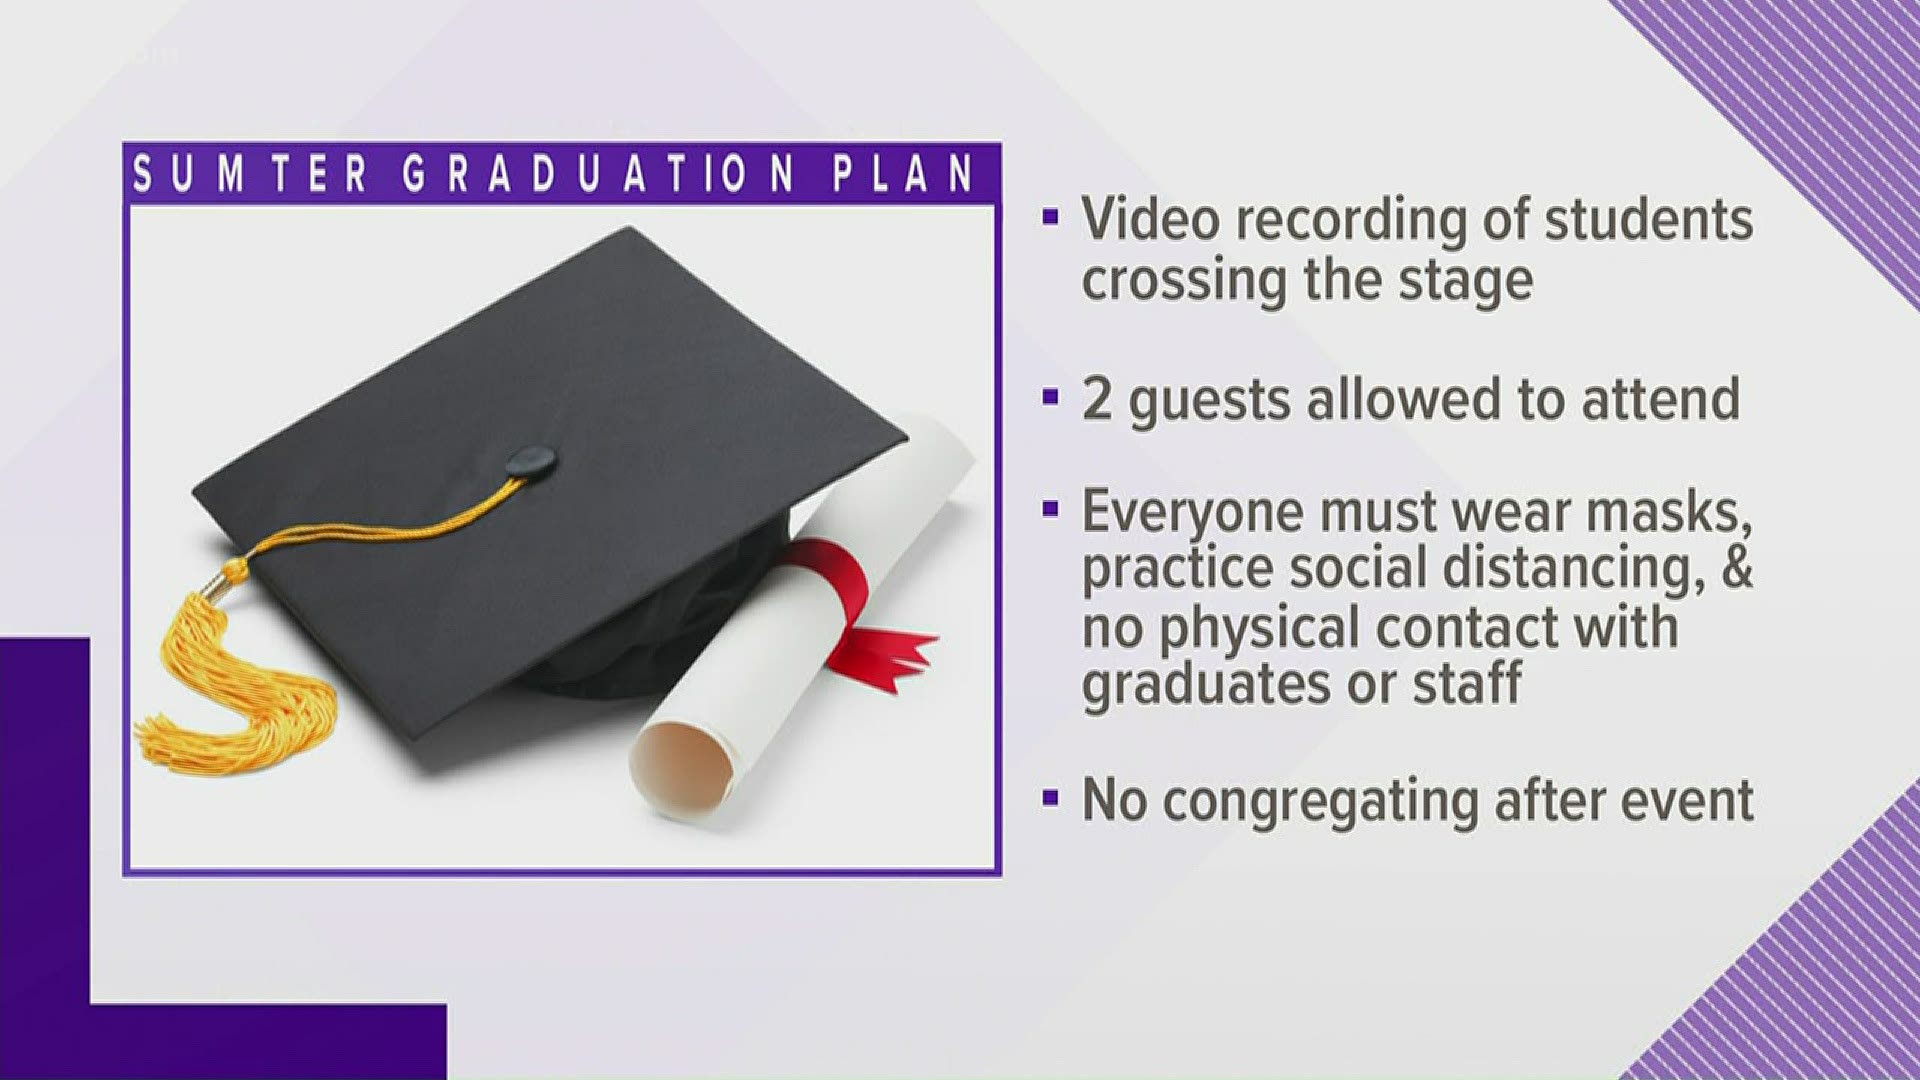 The graduation will be still virtual